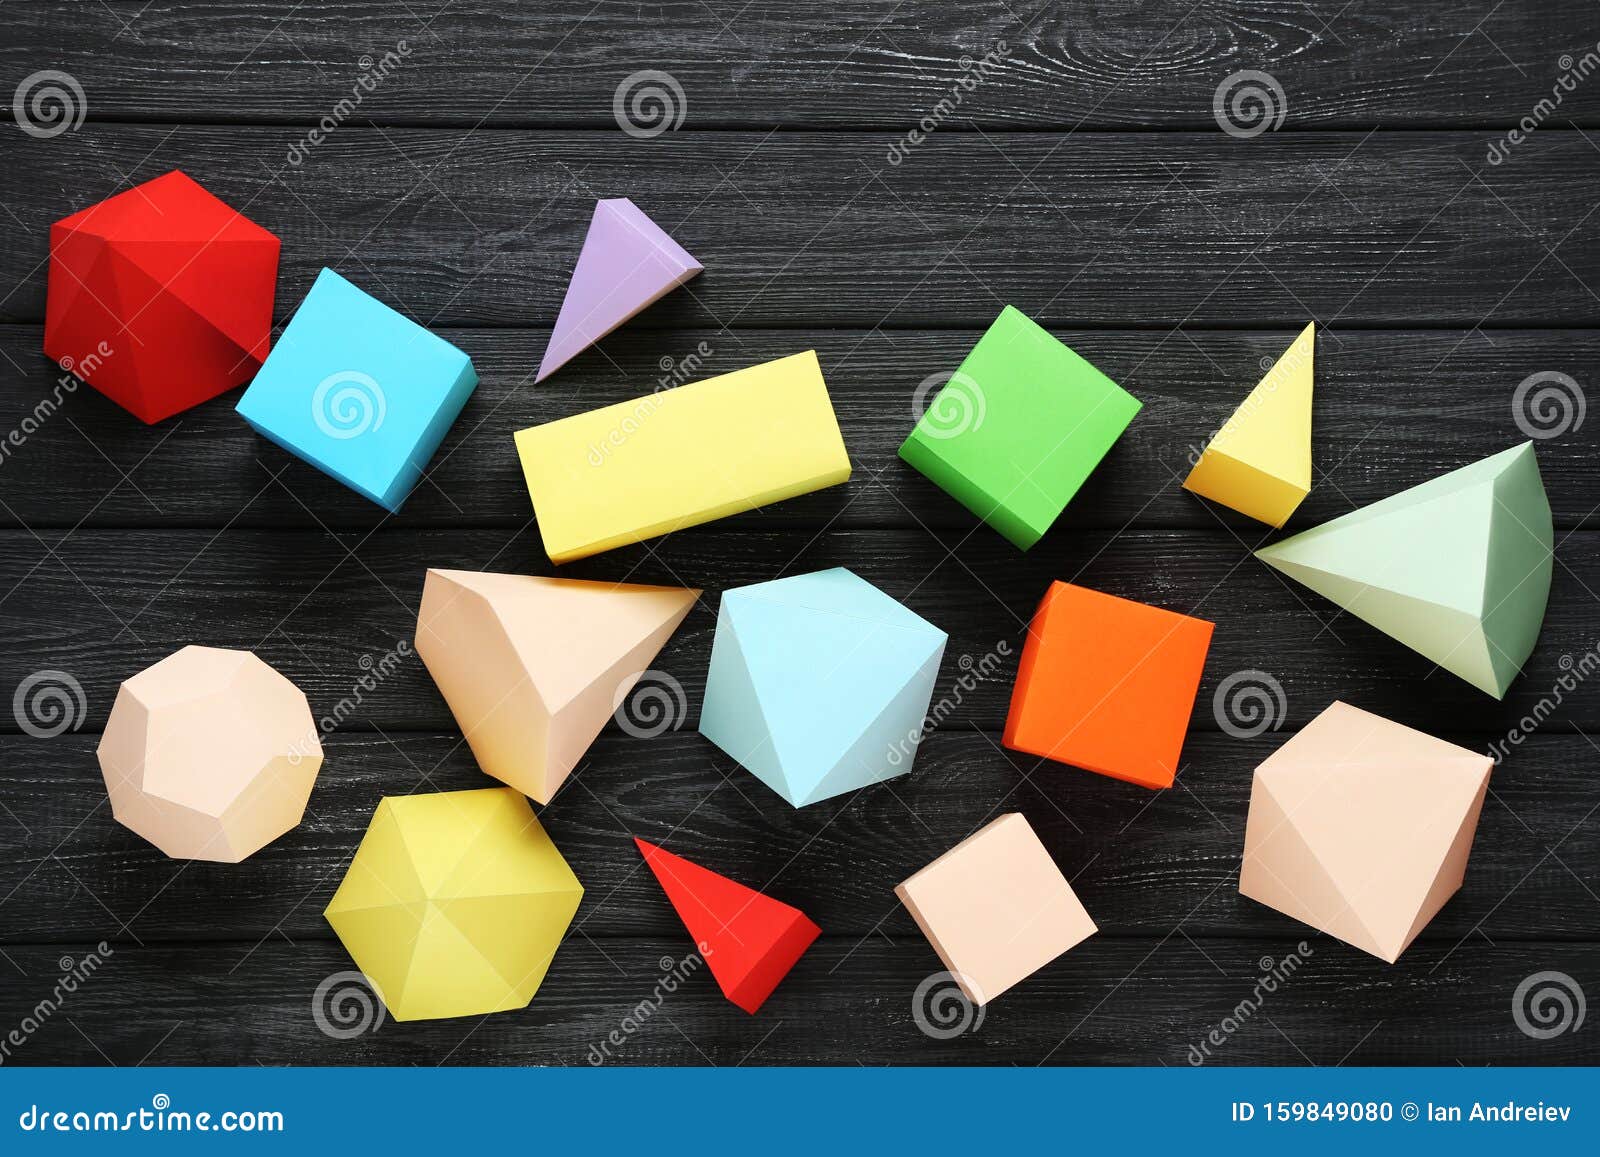 Farbige Geometrische Figuren Aus Papier Stockfoto Bild Von Papier Geometrische